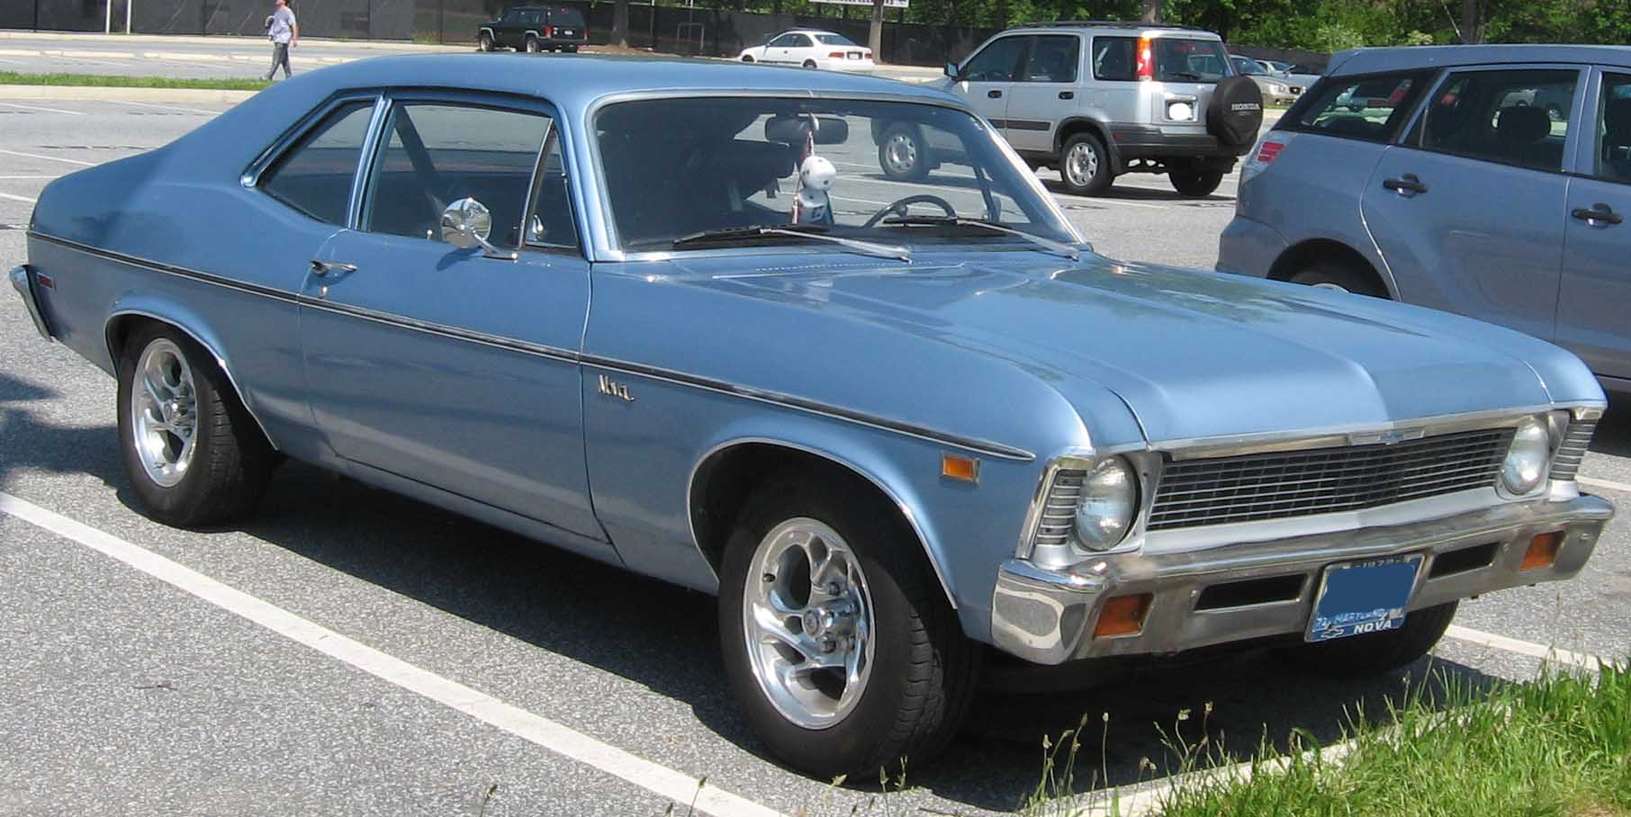 Chevrolet Nova #9009104